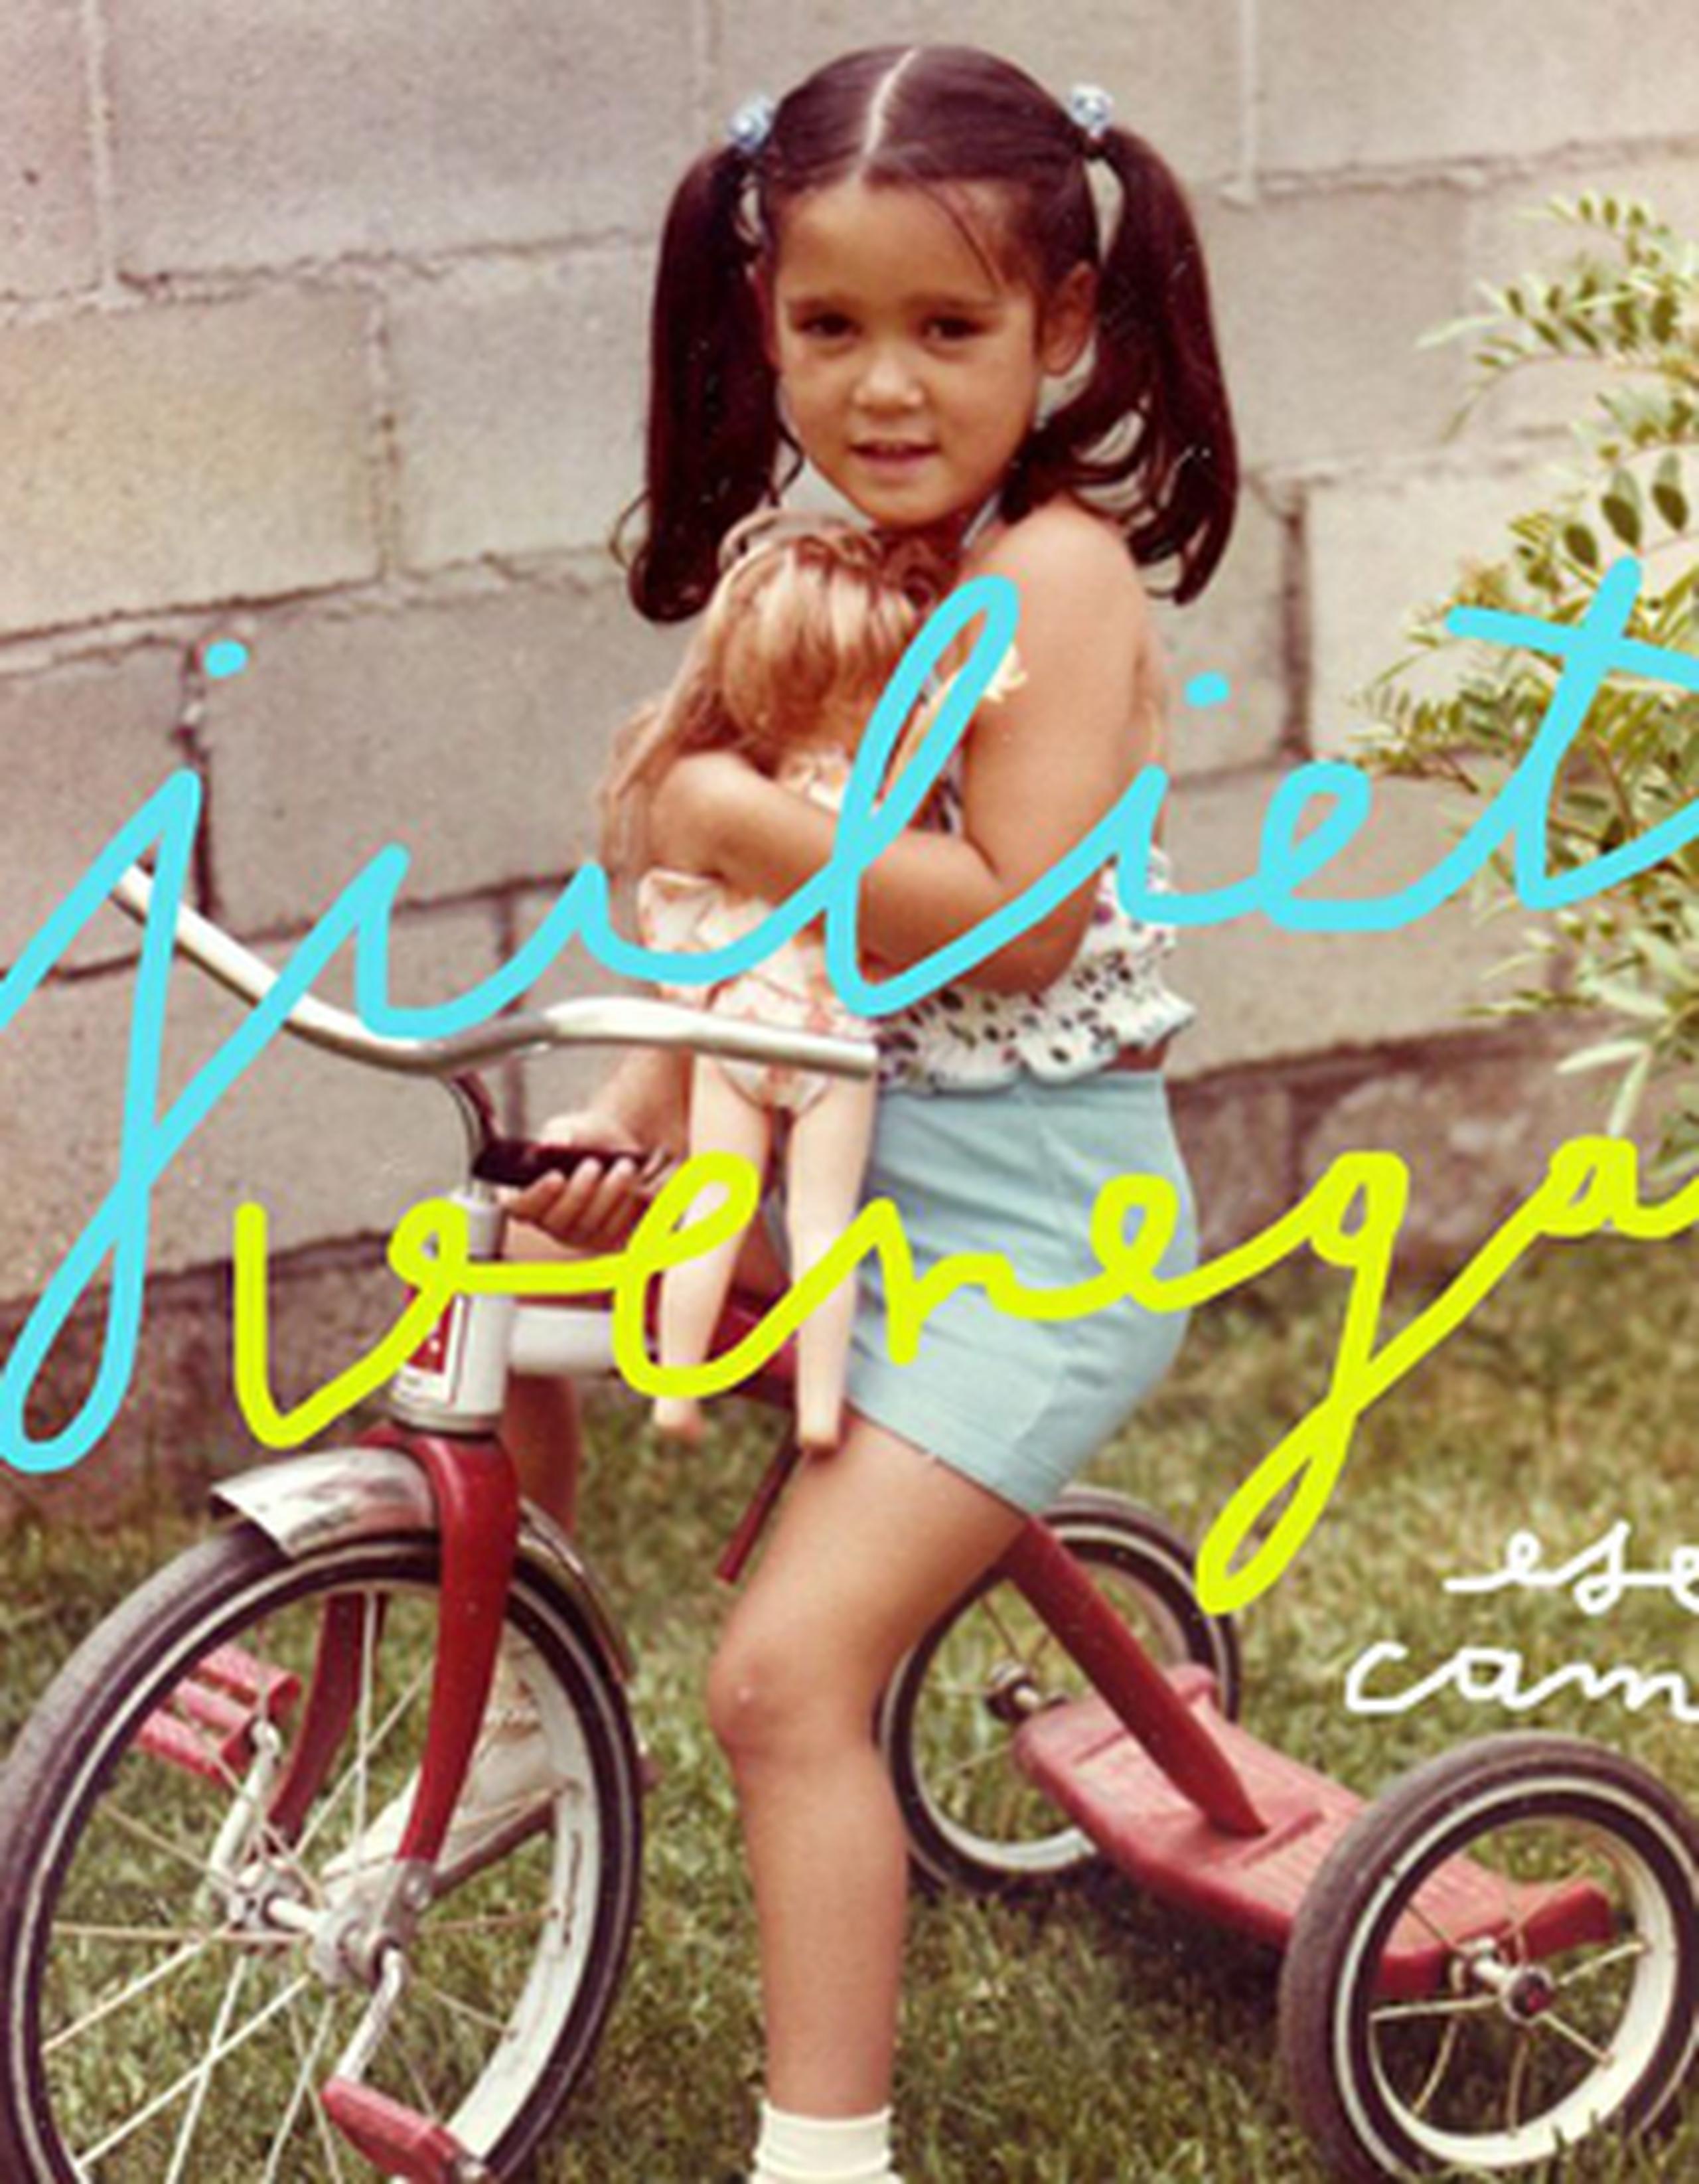 La portada del sencillo es una imagen de la artista cuando niña, montada sobre una bicicleta con una muñeca en brazos. (Suministrada)